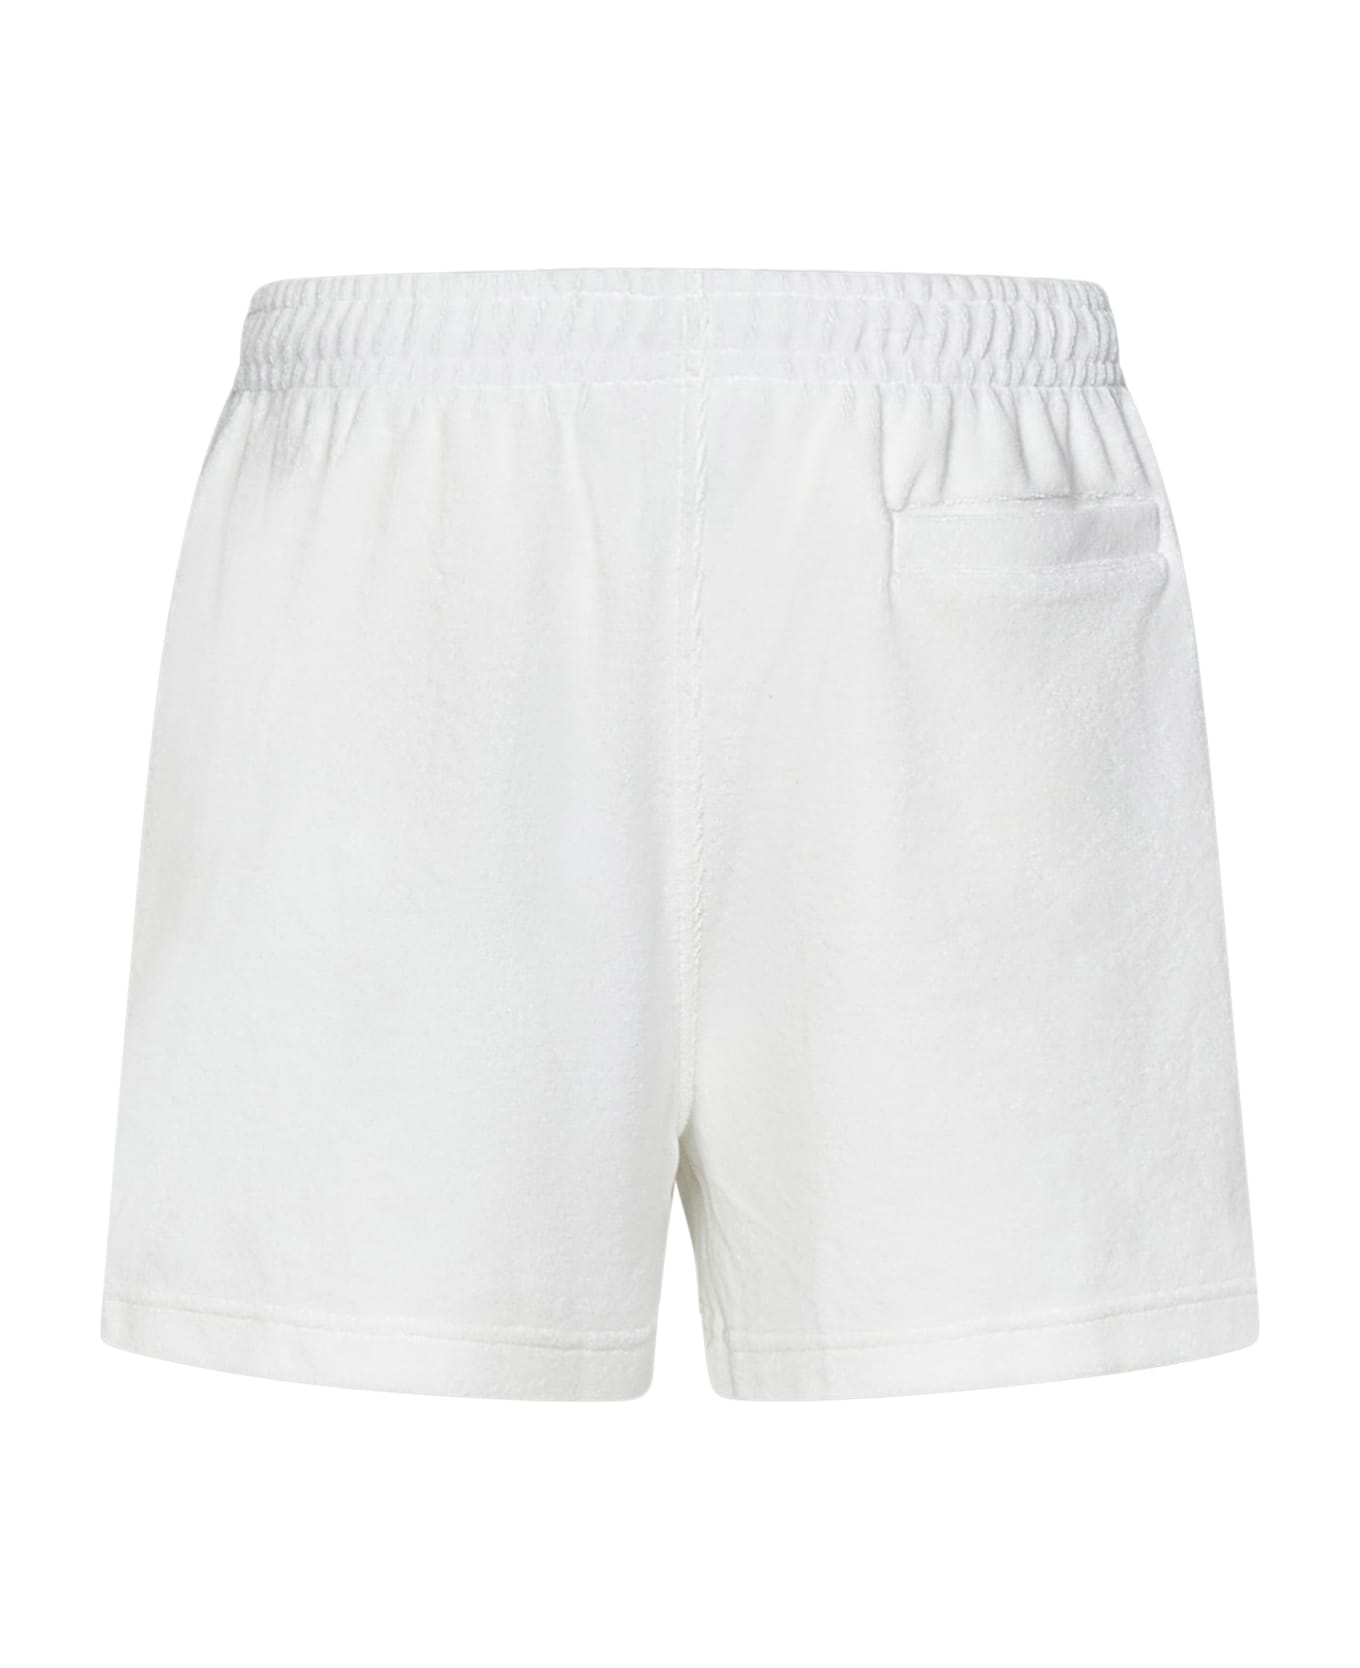 Lacoste Paris Shorts - White